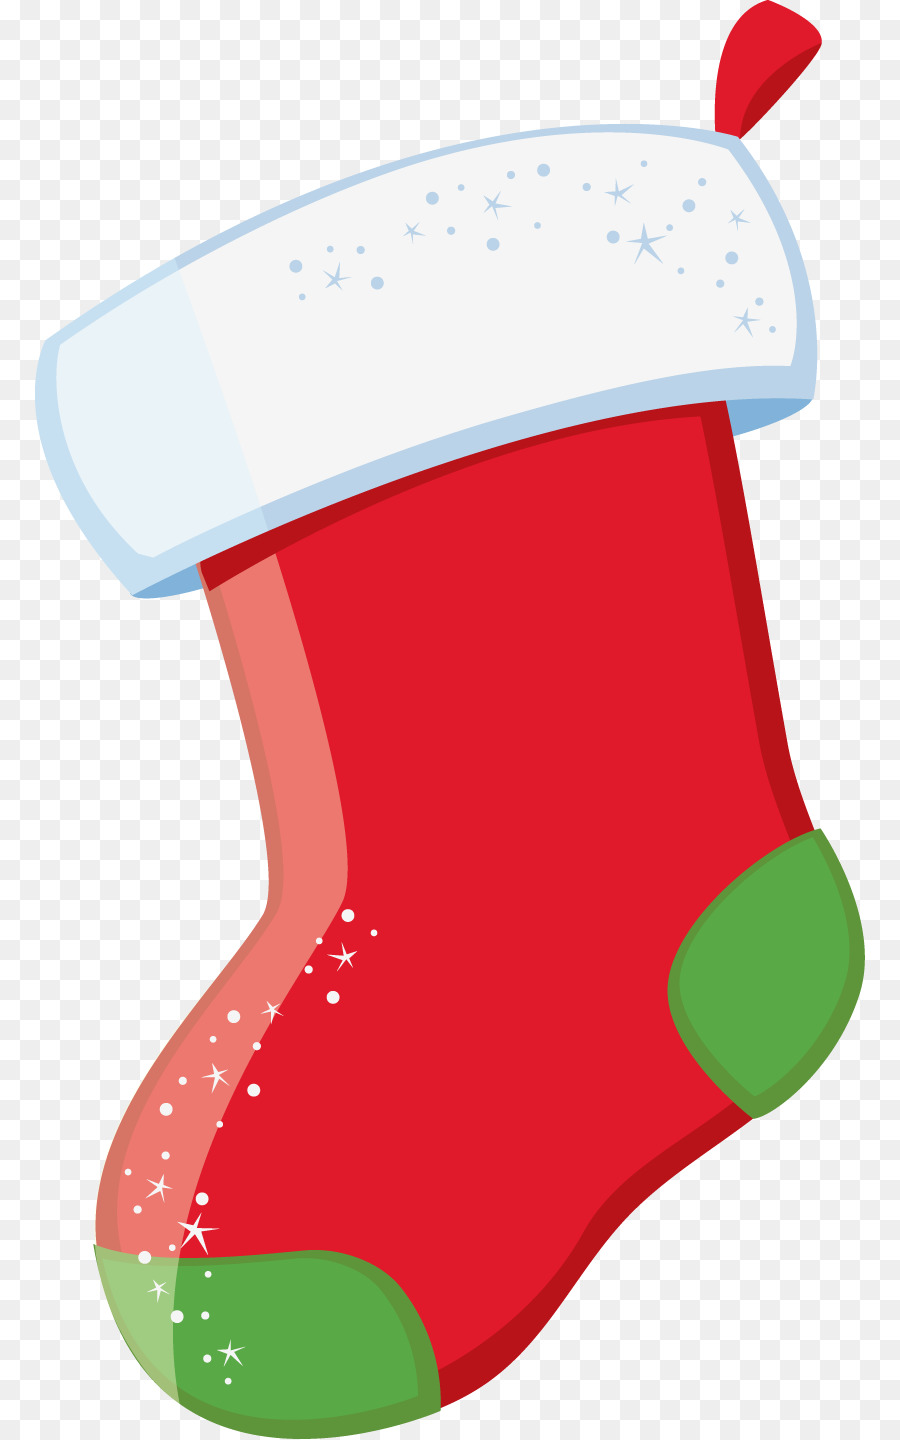 Christmas Stockings Clip art - christmas png download - 830*1439 - Free Transparent Christmas Stockings png Download.